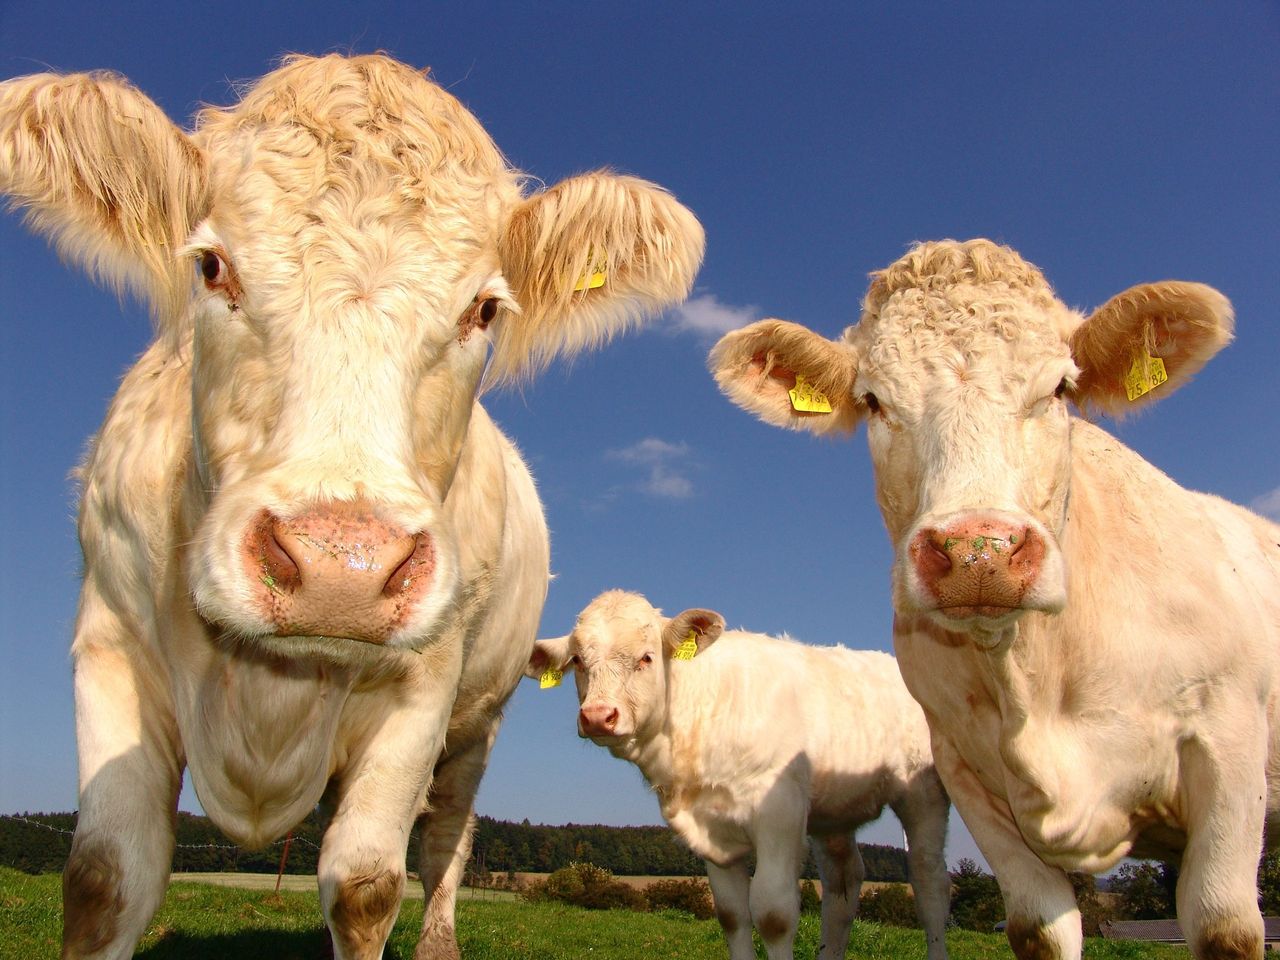 Ograniczenie spożycia wołowiny miałoby ogromny wpływ na poprawę kondycji klimatu na Ziemi.